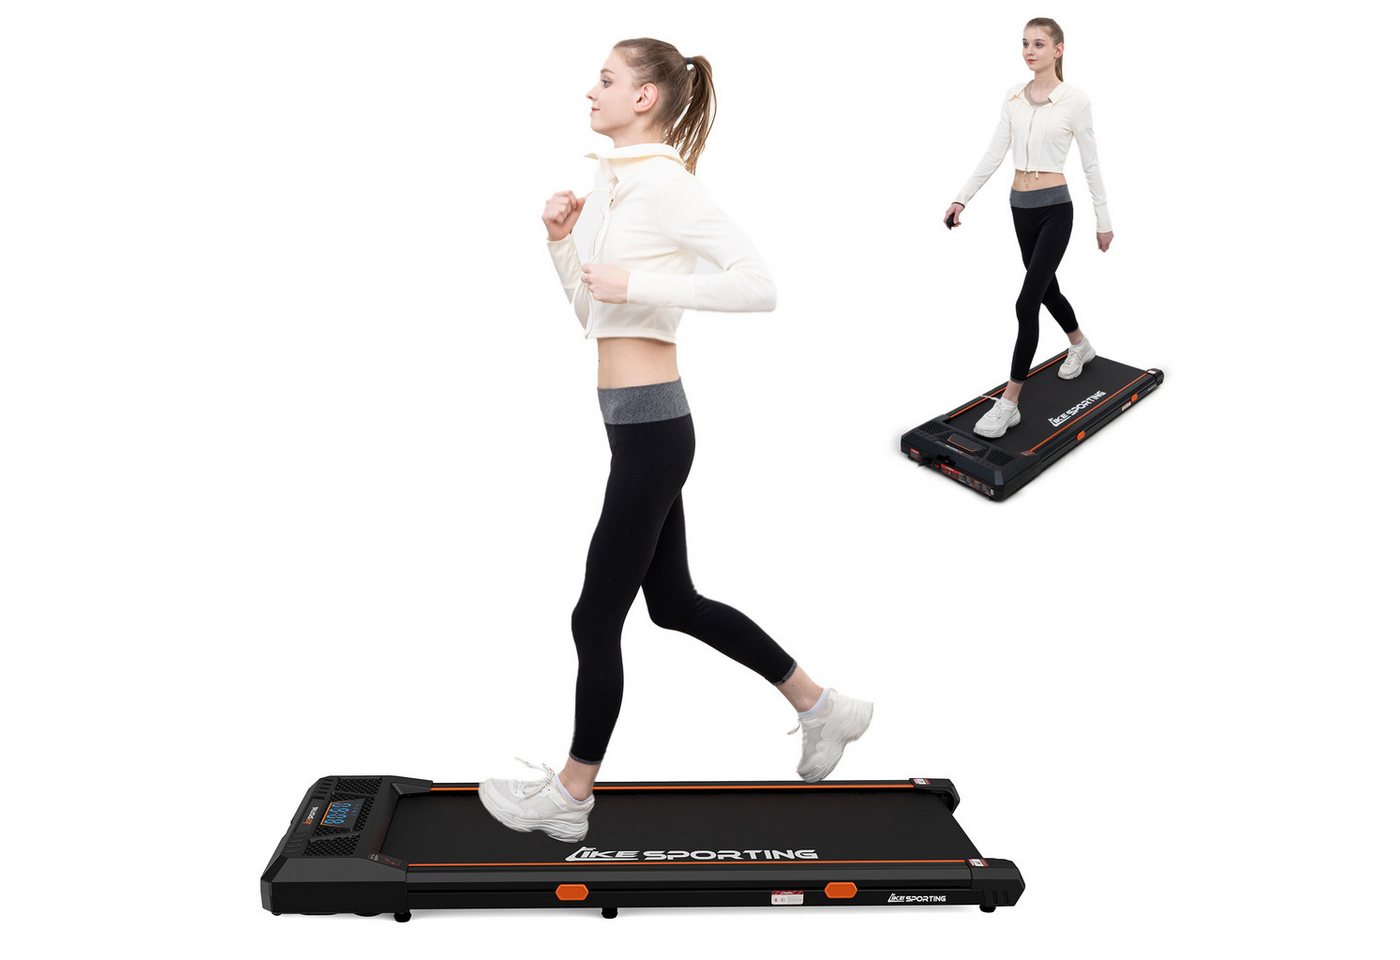 CITYSPORTS Laufband Likesporting 550W Treadmill mit Bluetooth für Zuhause und im Büro (Mit Schmiermittel, Toolkit), 1-6km/h Walking/jogging Pad mit LED-Anzeige und Fernbedienung von CITYSPORTS